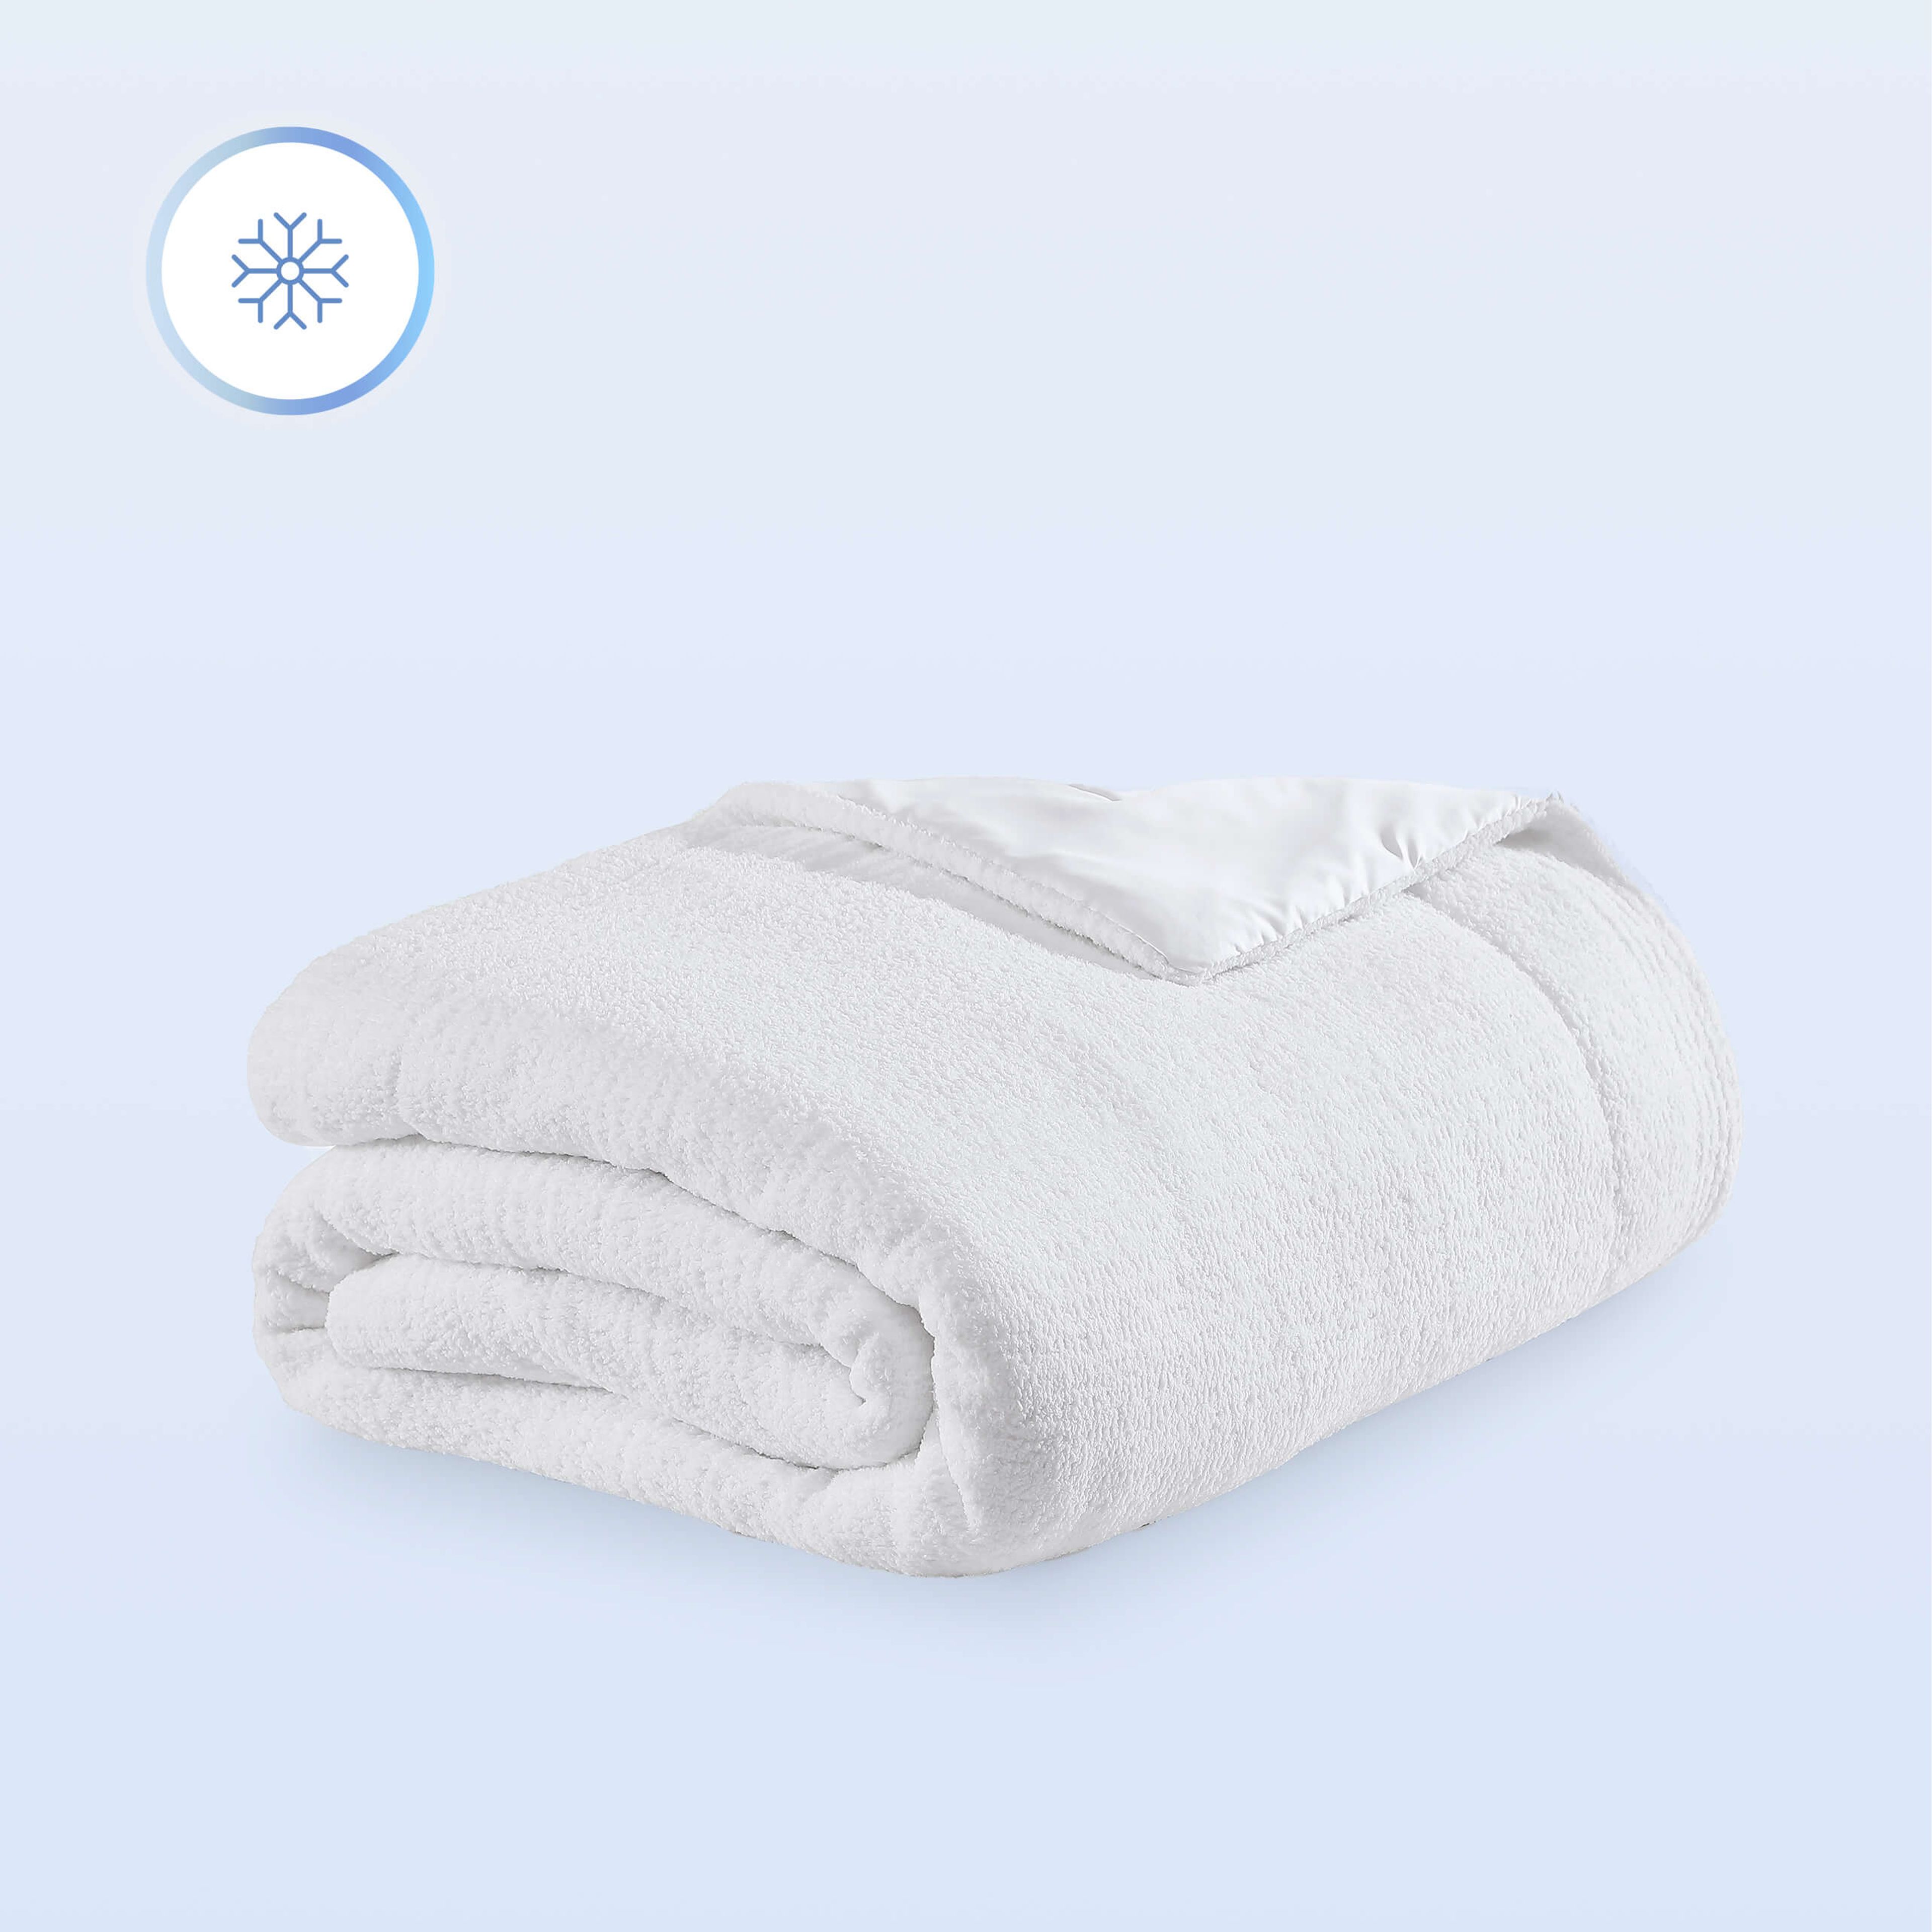 Snug Cooling Comforter